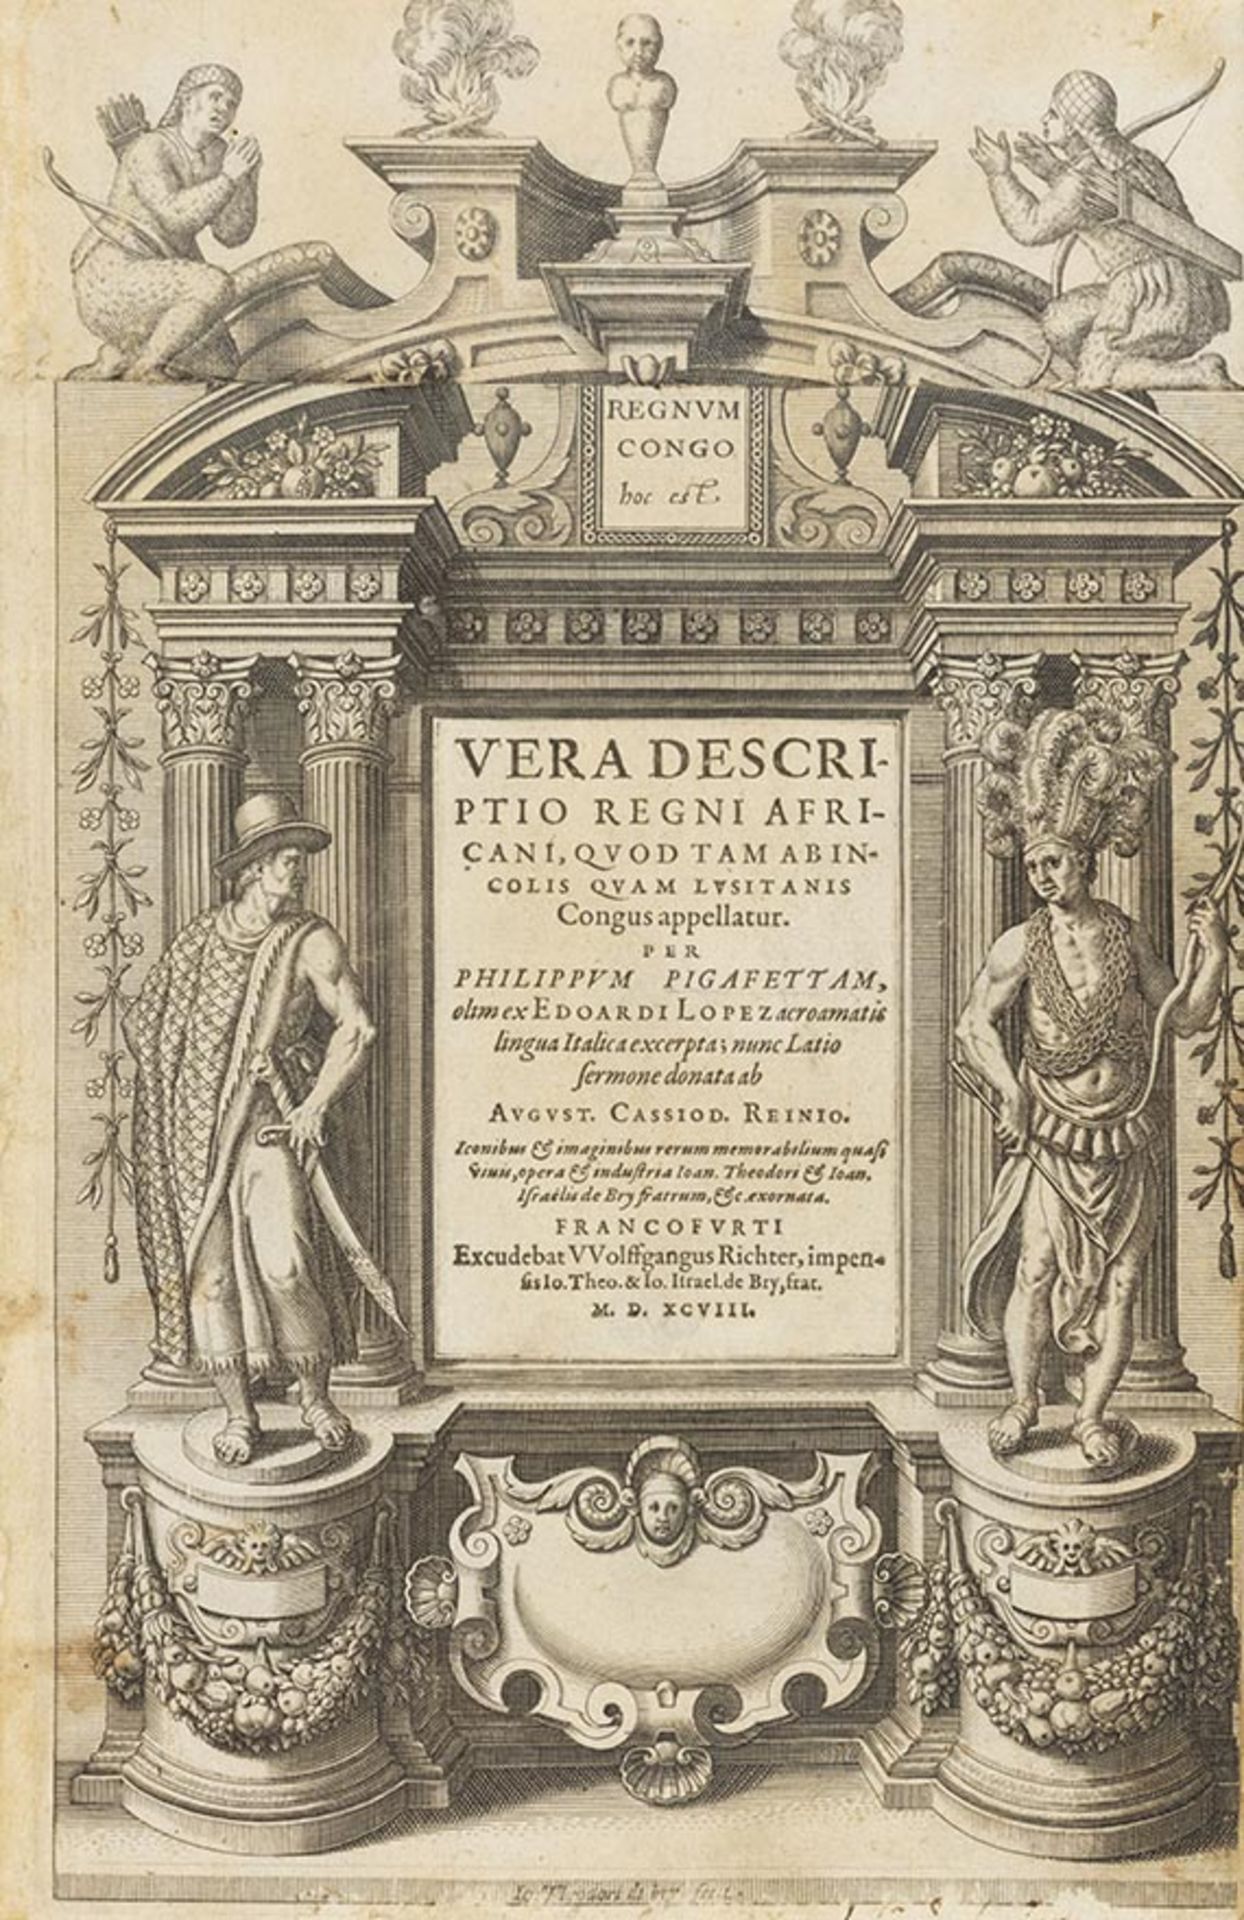 Theodor de Bry, Indiae Orientalis pars I bis XII und Appendix. Frankfurt.